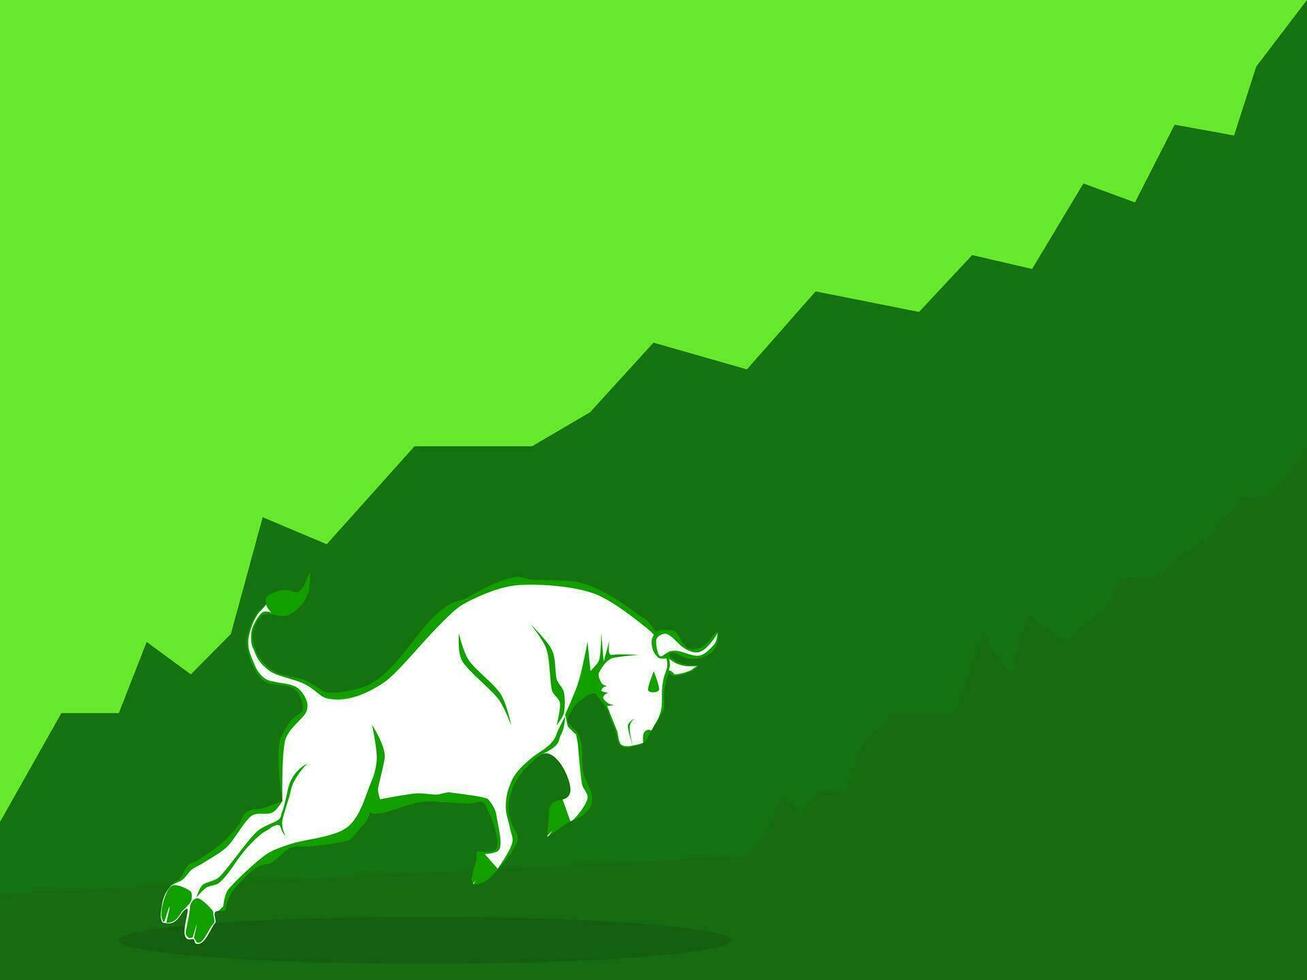 taureau marché vecteur. le concept de taureau marché sur Stock marché investissement bien situation vecteur